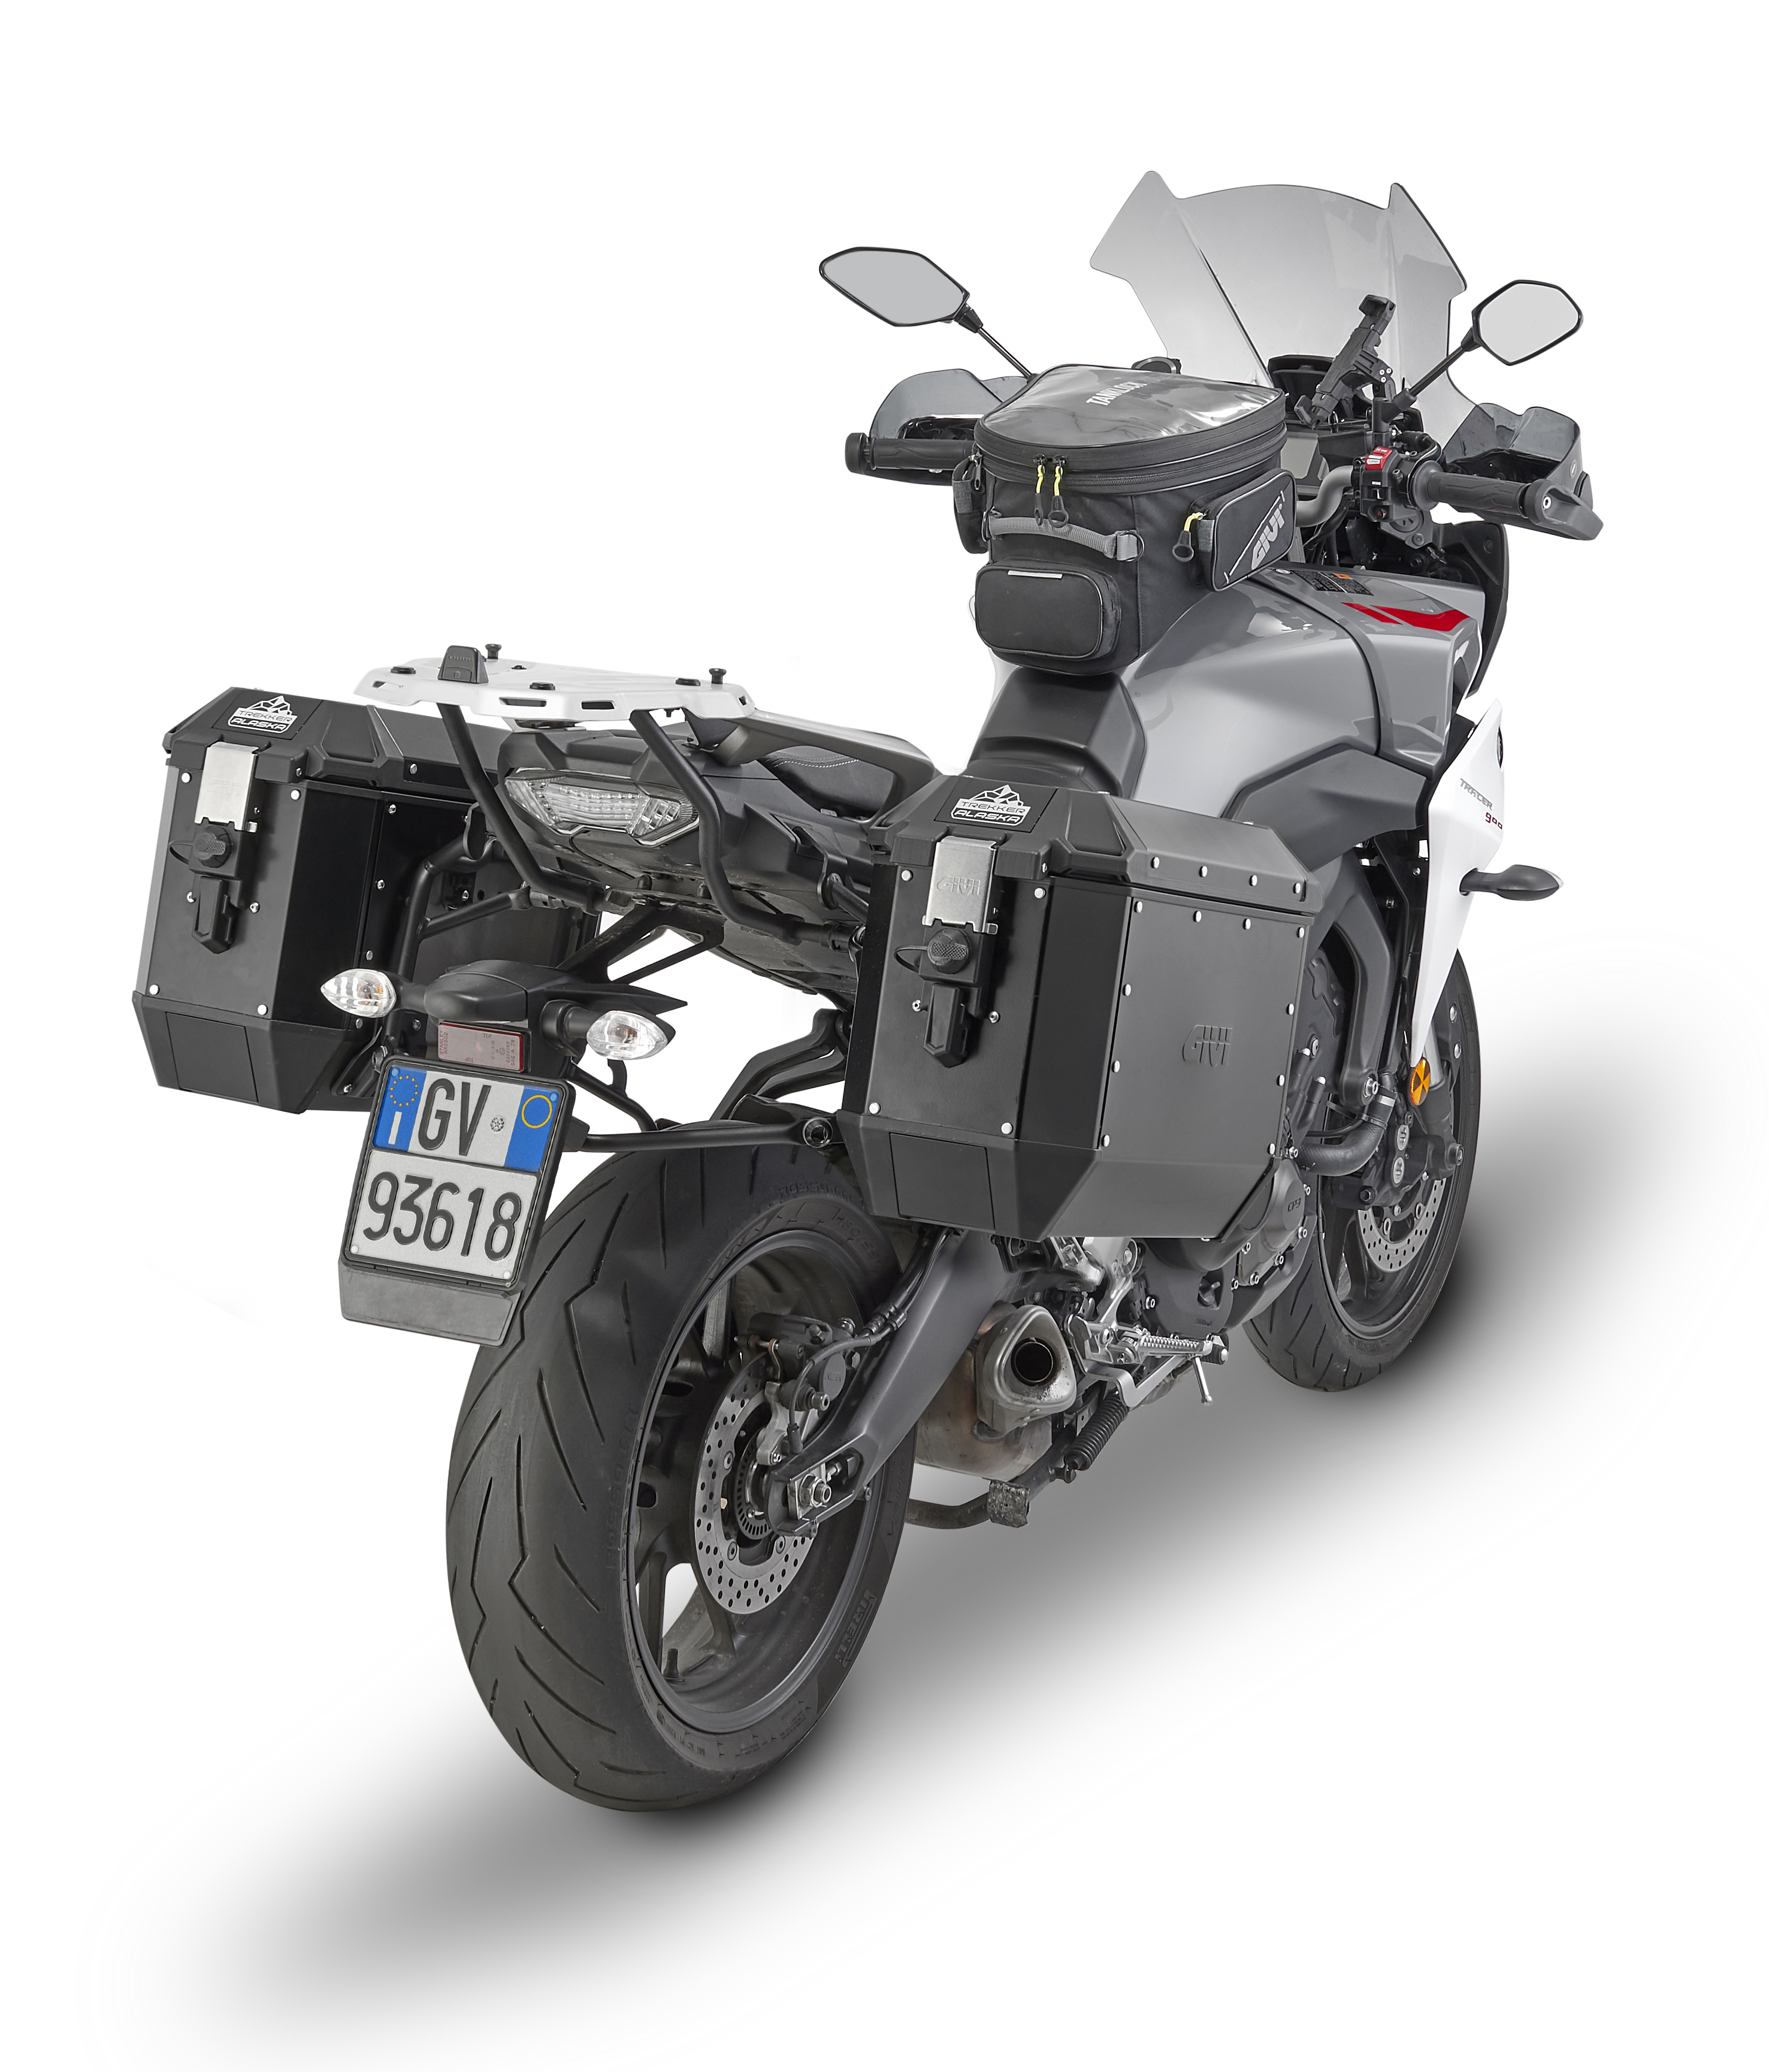 GIVI DLM36 Trekker Dolomiti set valises Aluminium Noir - Top case et valise  moto